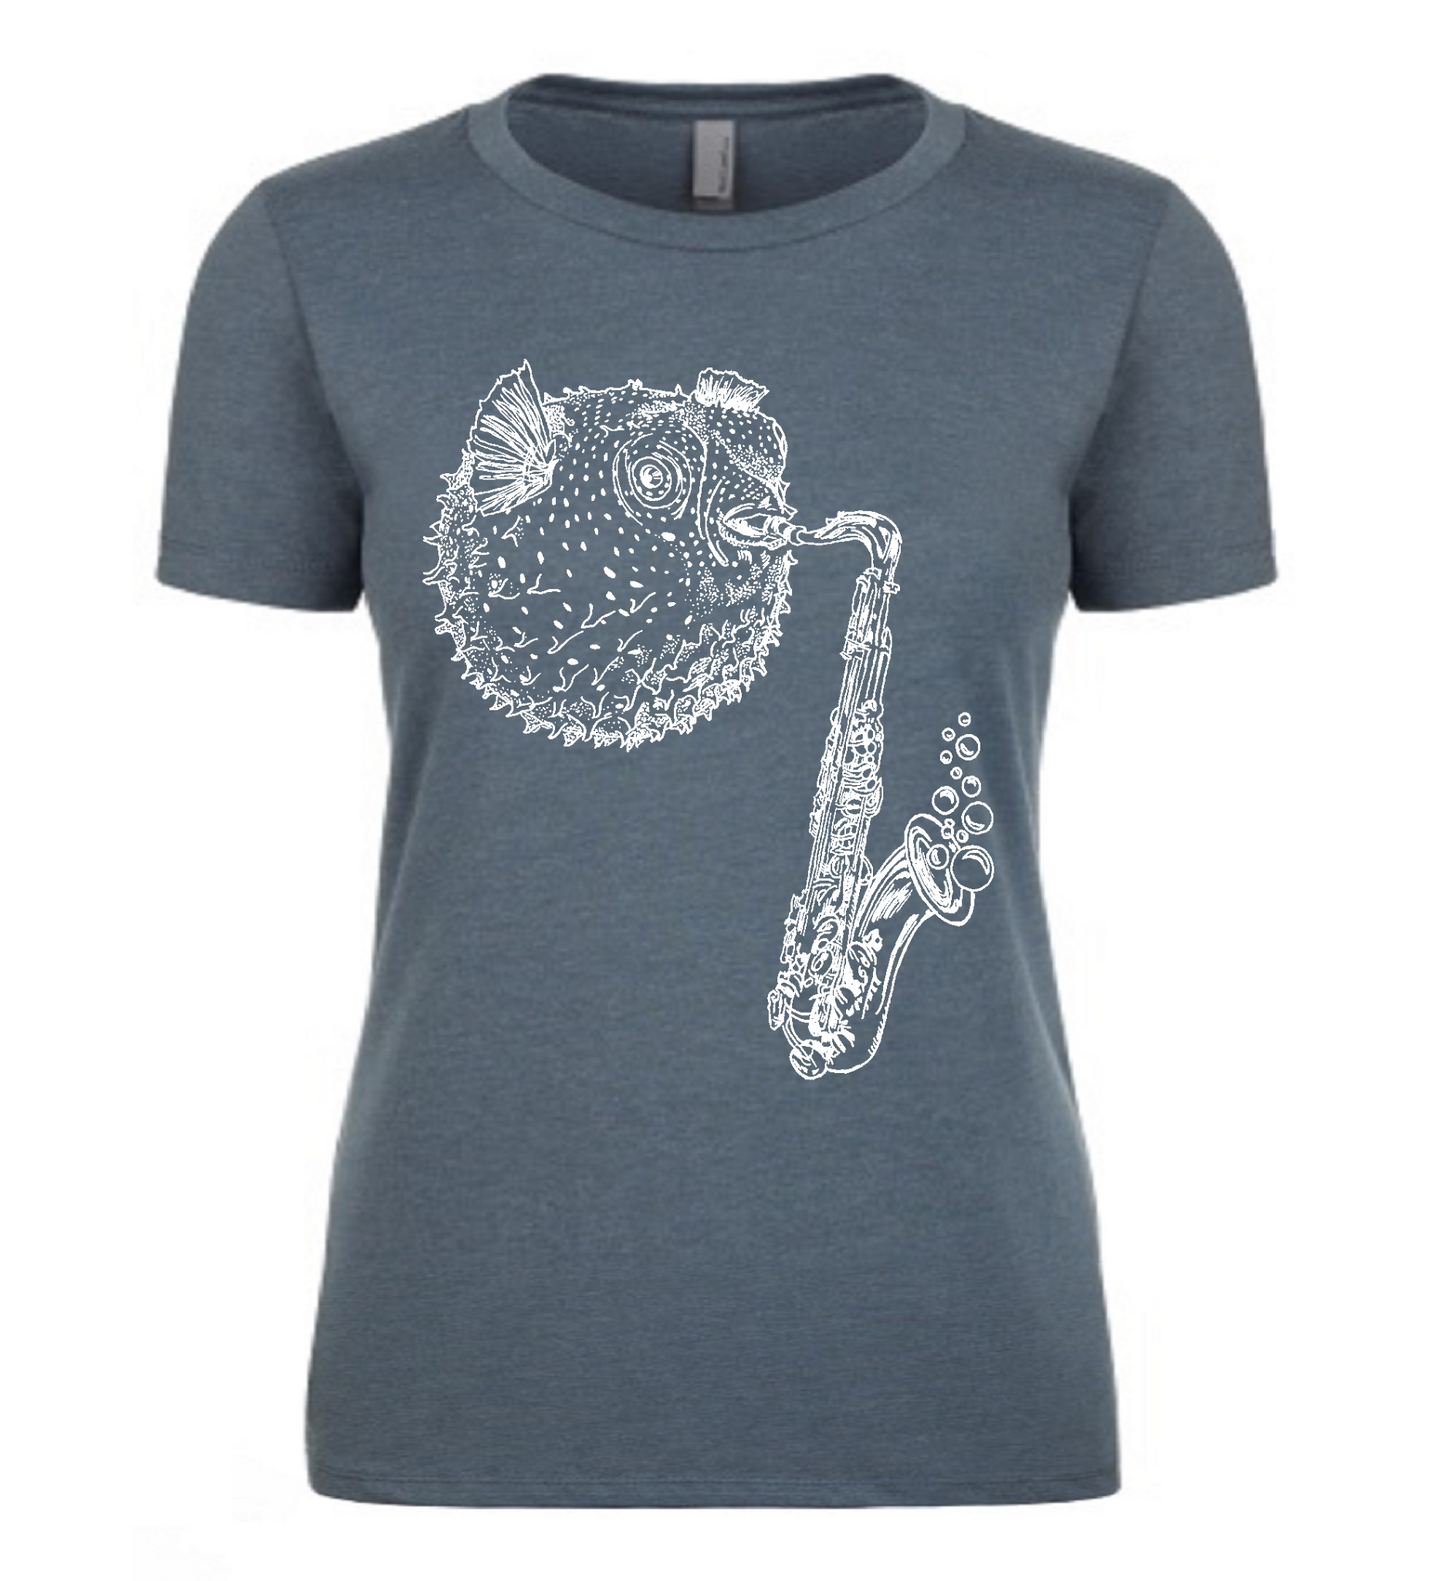 Blowfish Playing Saxophone Ladies T Shirt